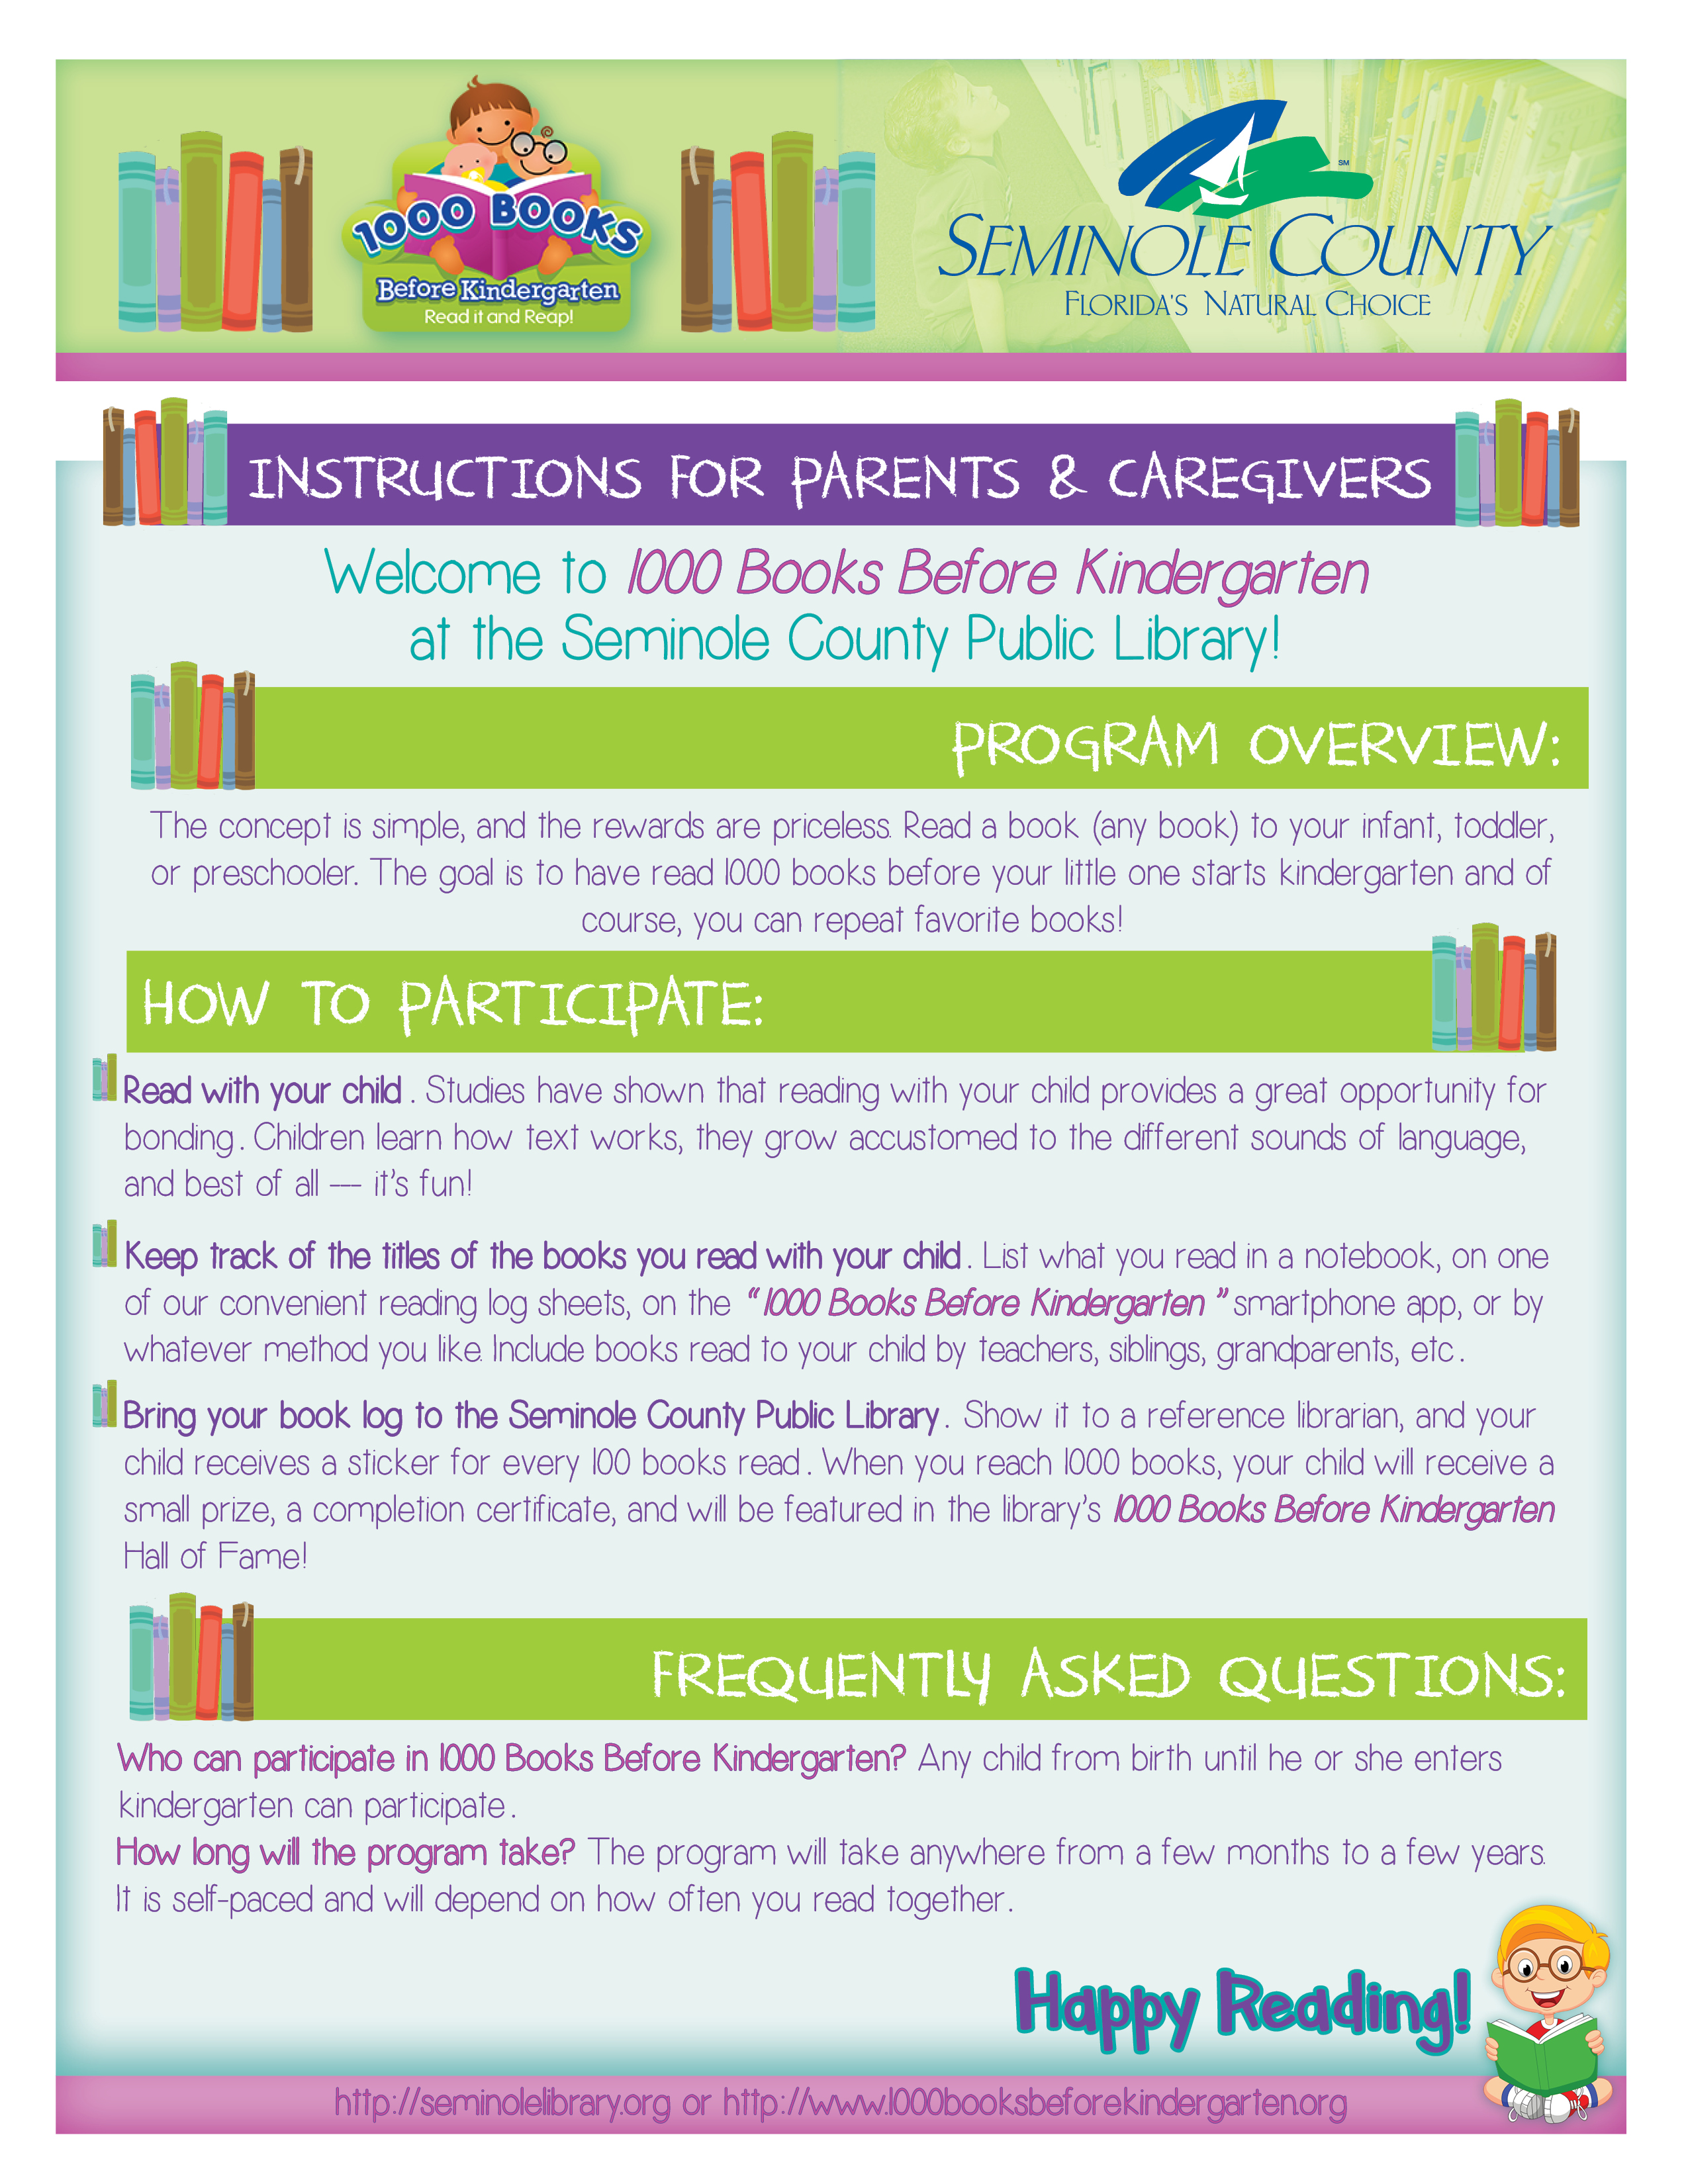 Instructions for 1000 Books Before Kindergarten Program